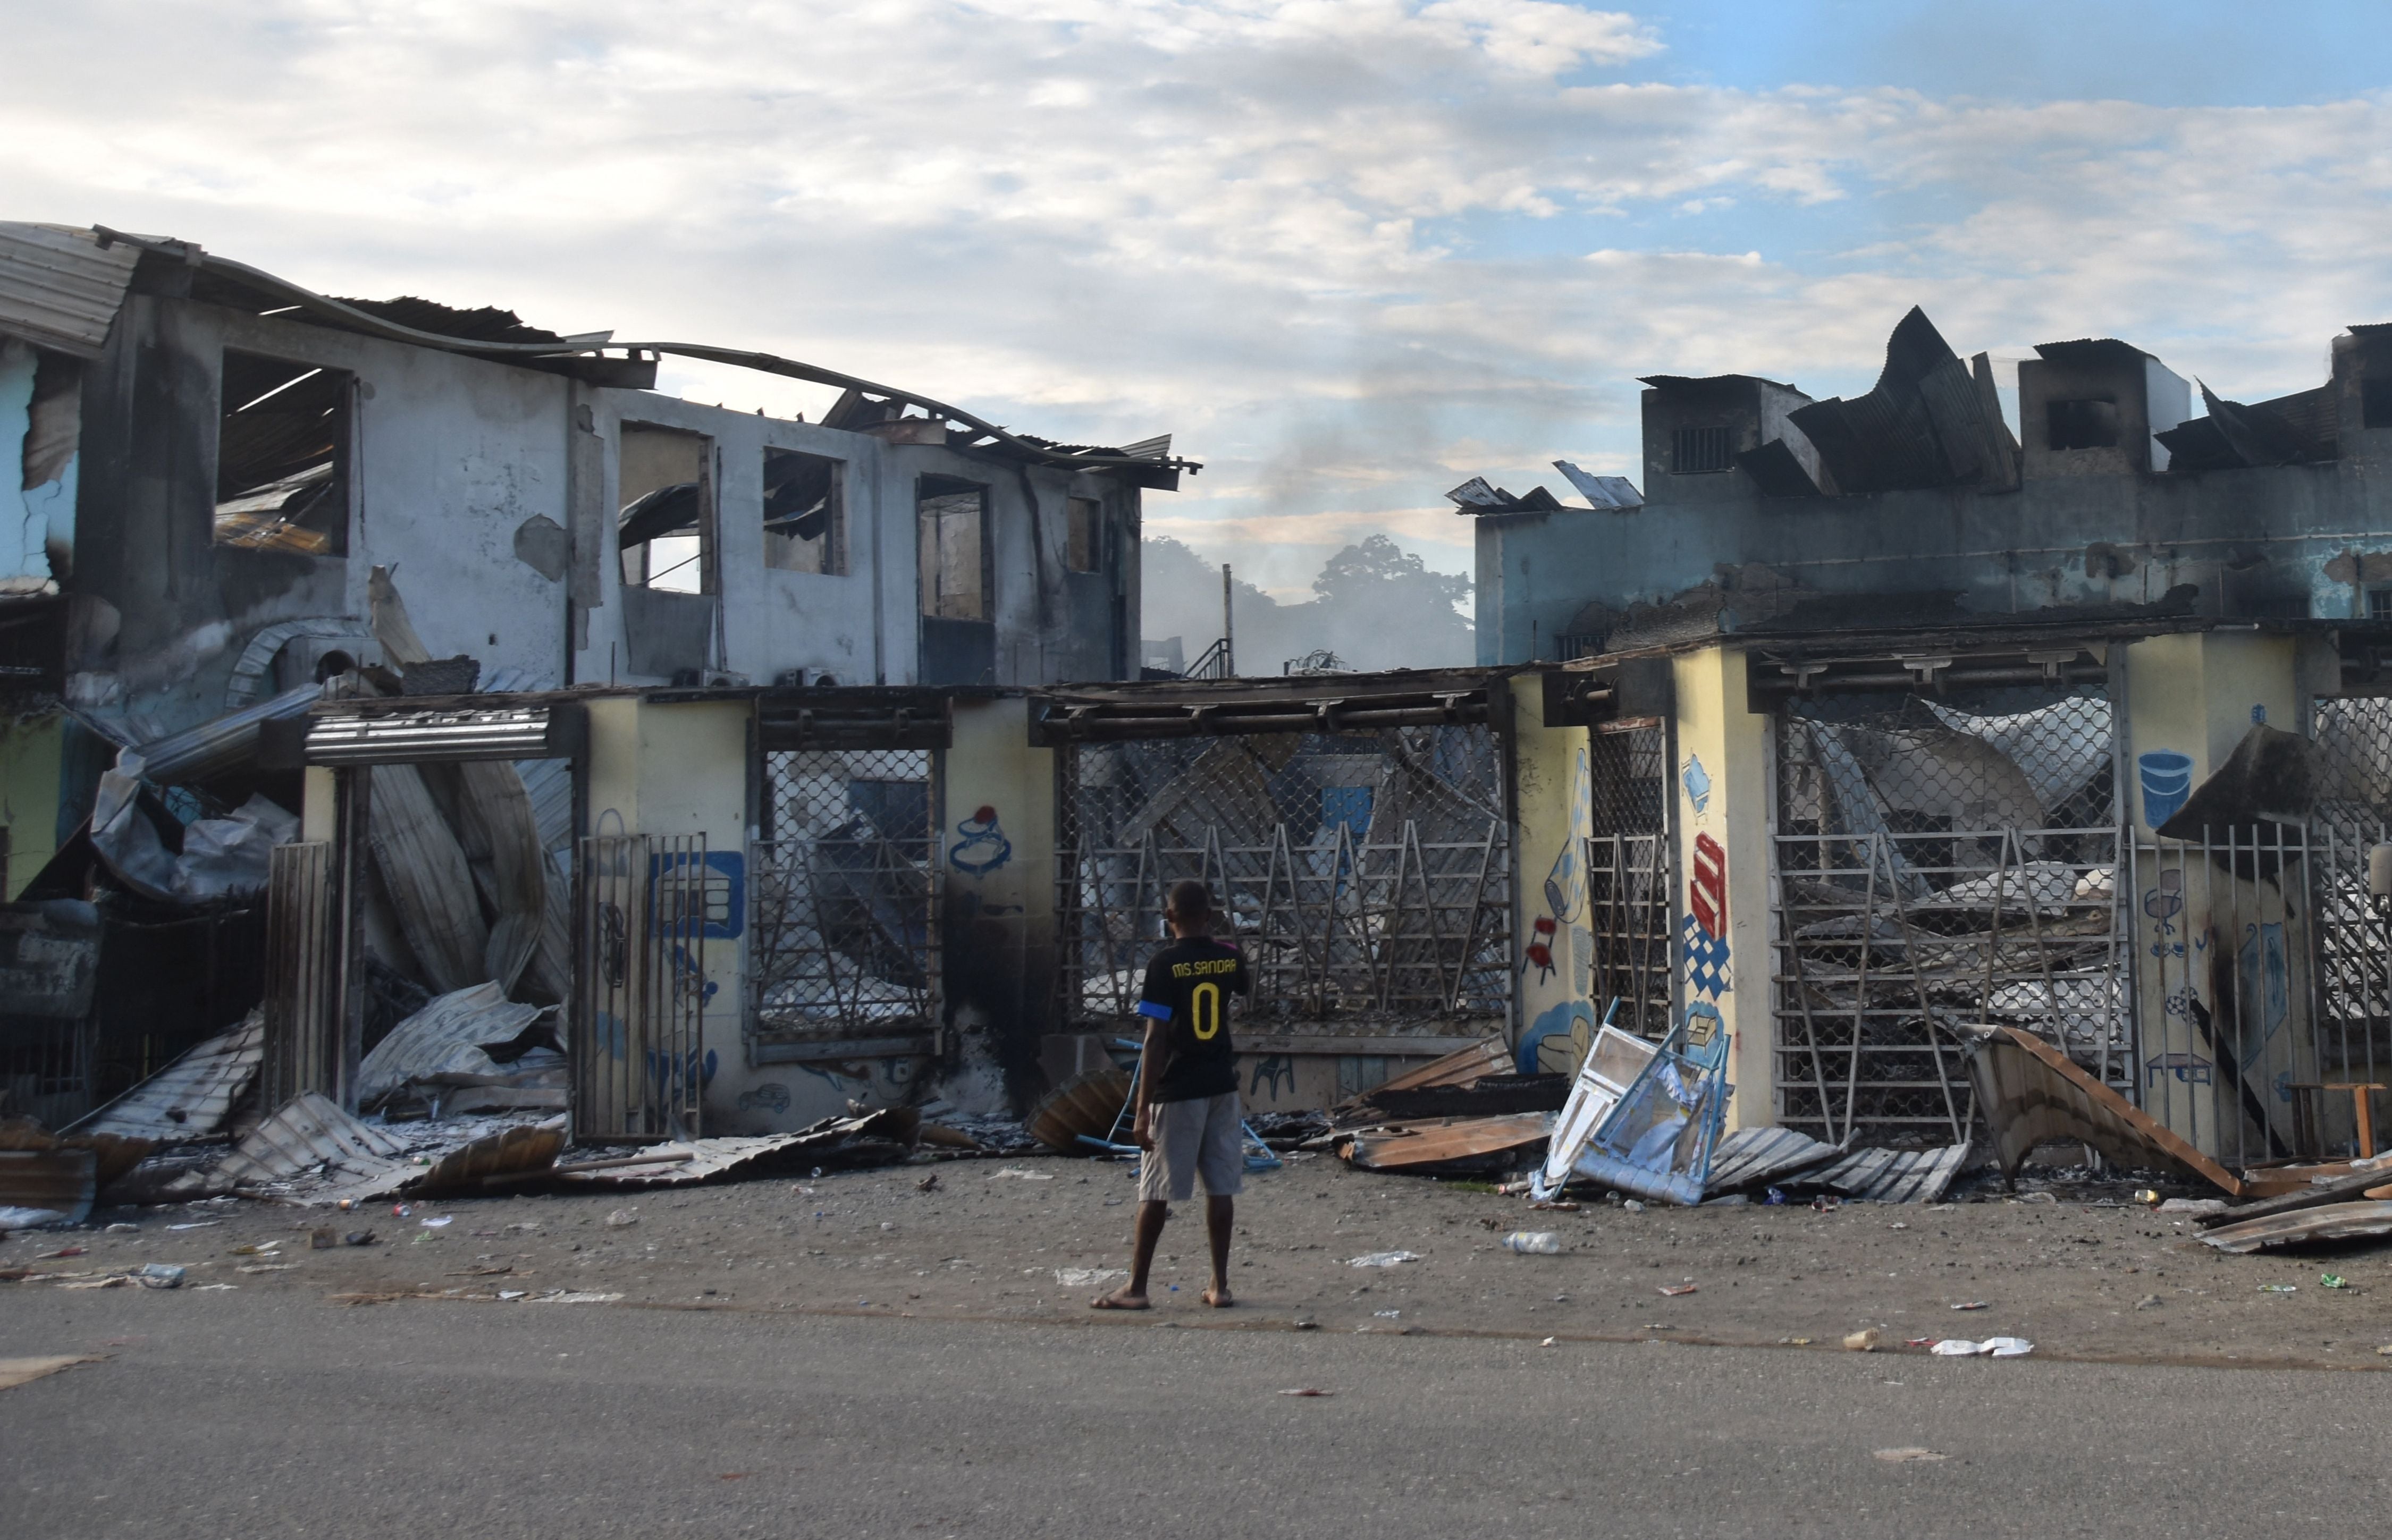 Foto de archivo: un hombre observa los daños causados por los disturbios en Honiara, Islas Salomón, el 27 de noviembre de 2021